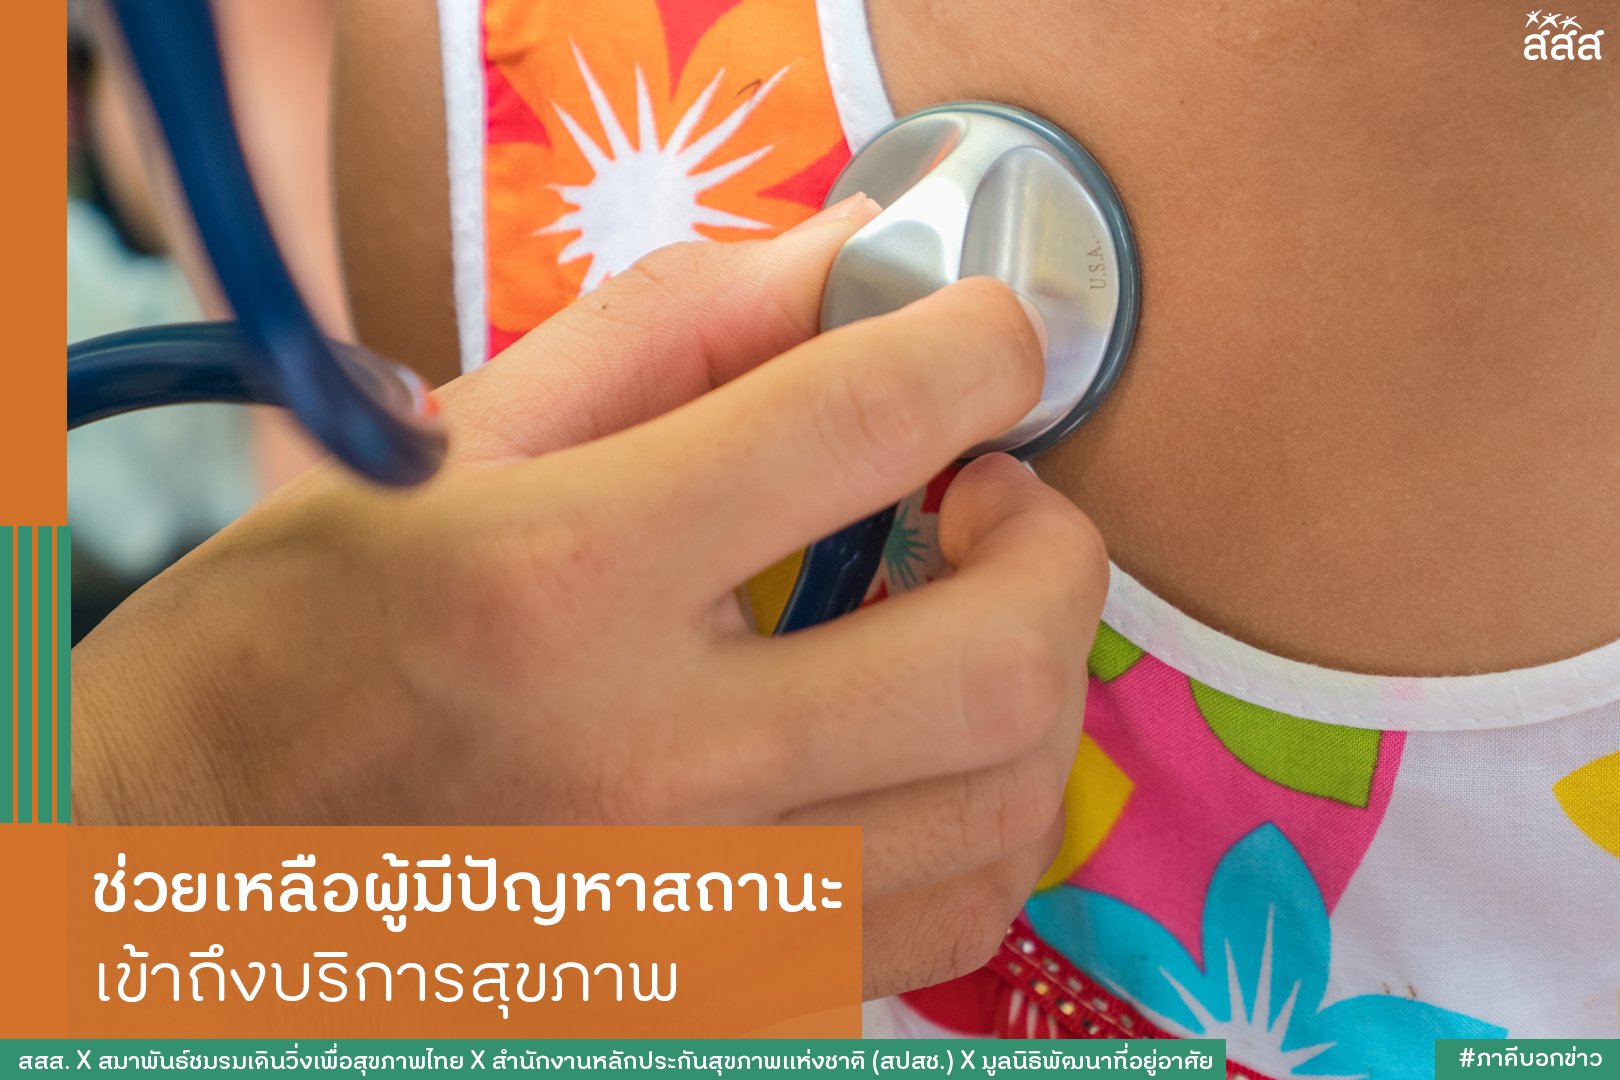 ช่วยเหลือผู้มีปัญหาสถานะ เข้าถึงบริการสุขภาพ thaihealth